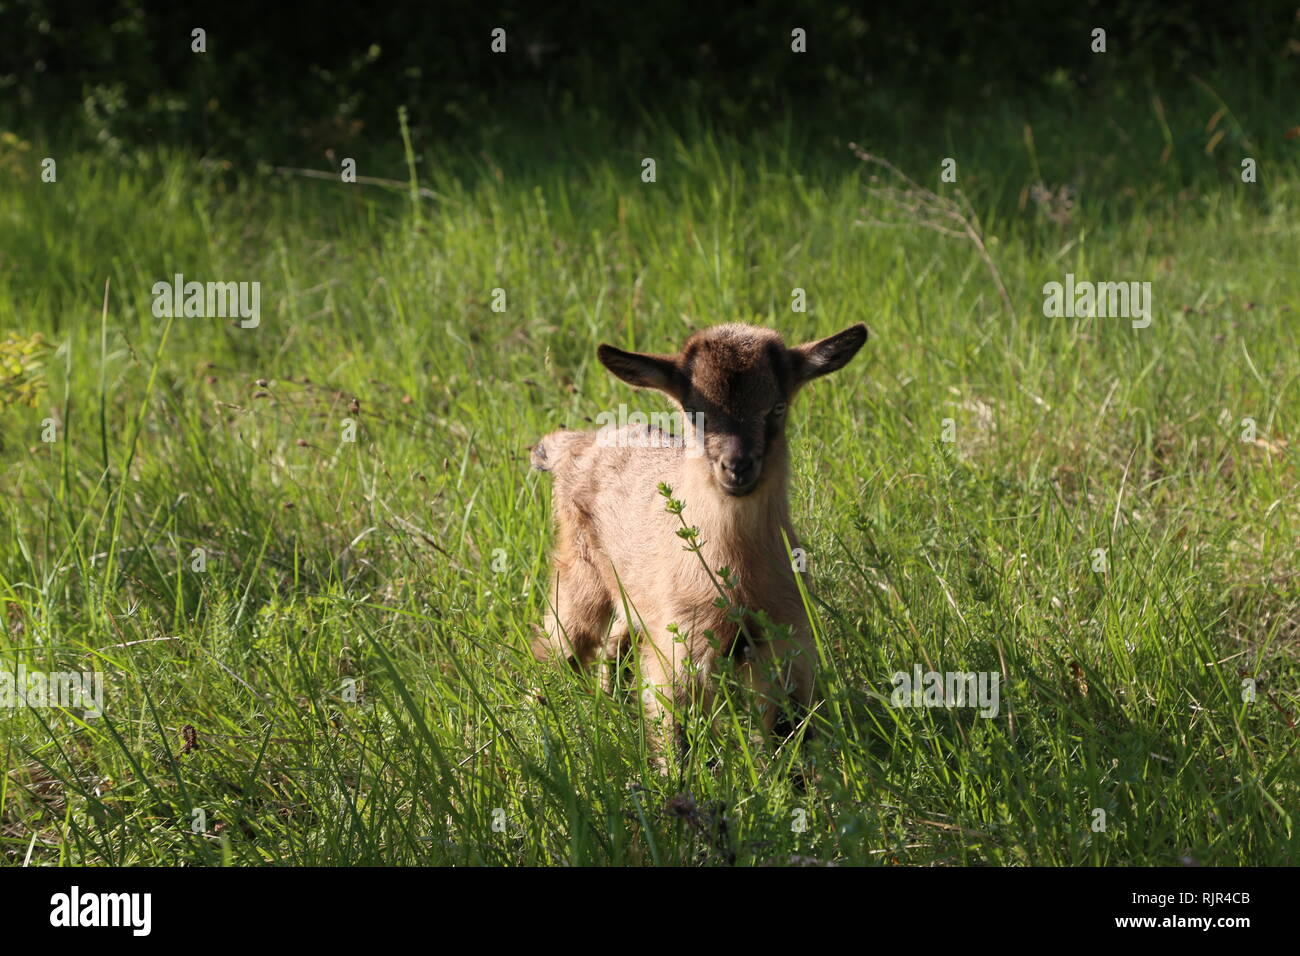 Goatling / Petit chèvre dans l'herbe Banque D'Images